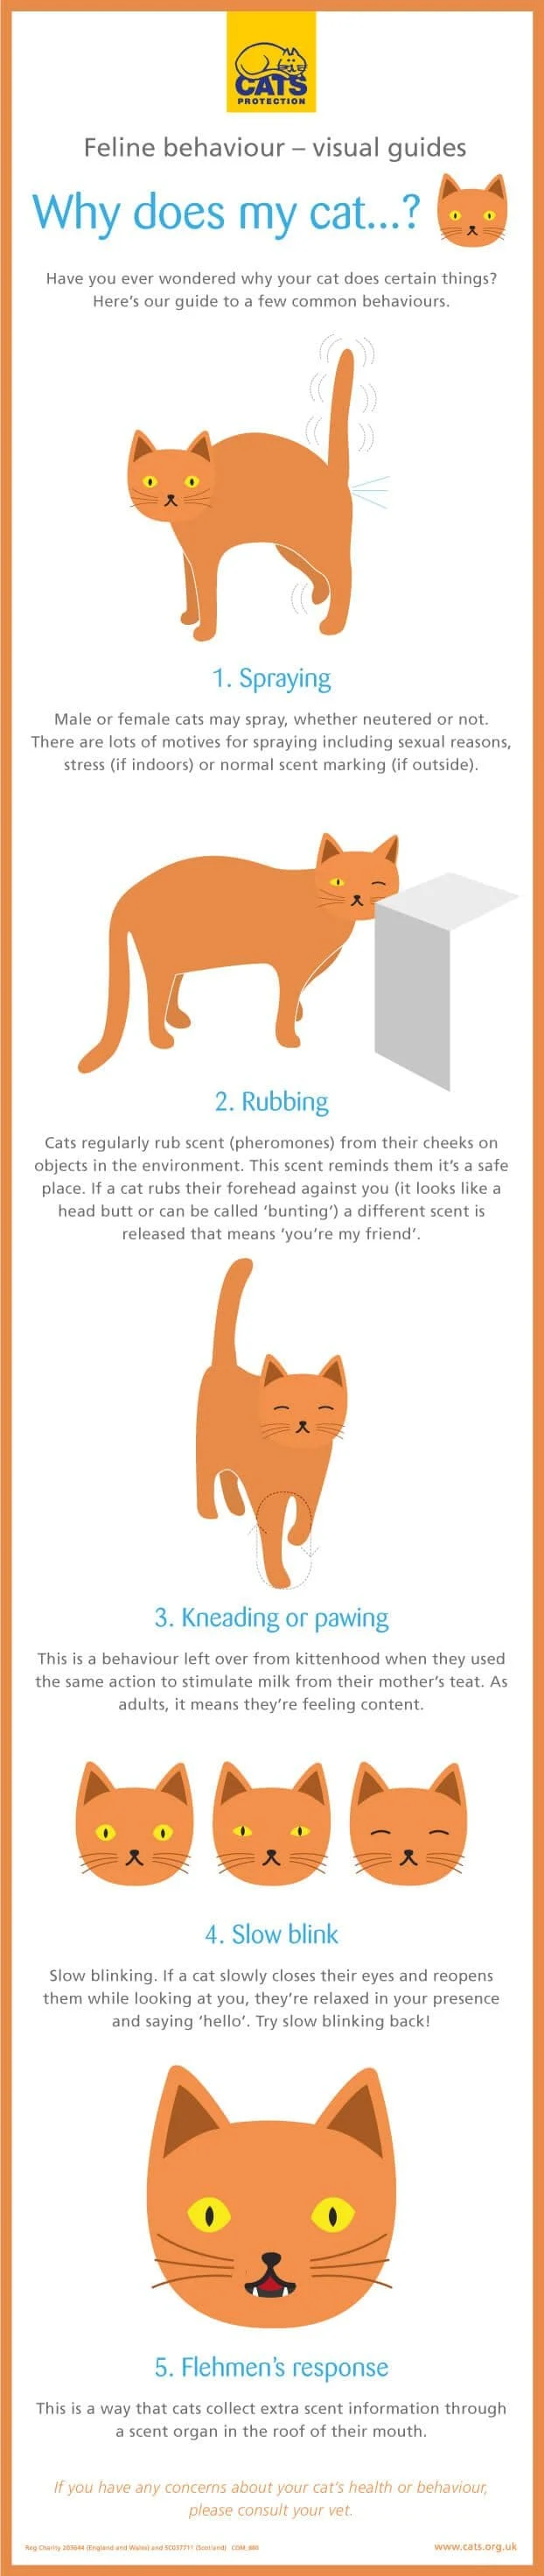 Cat behaviour guide